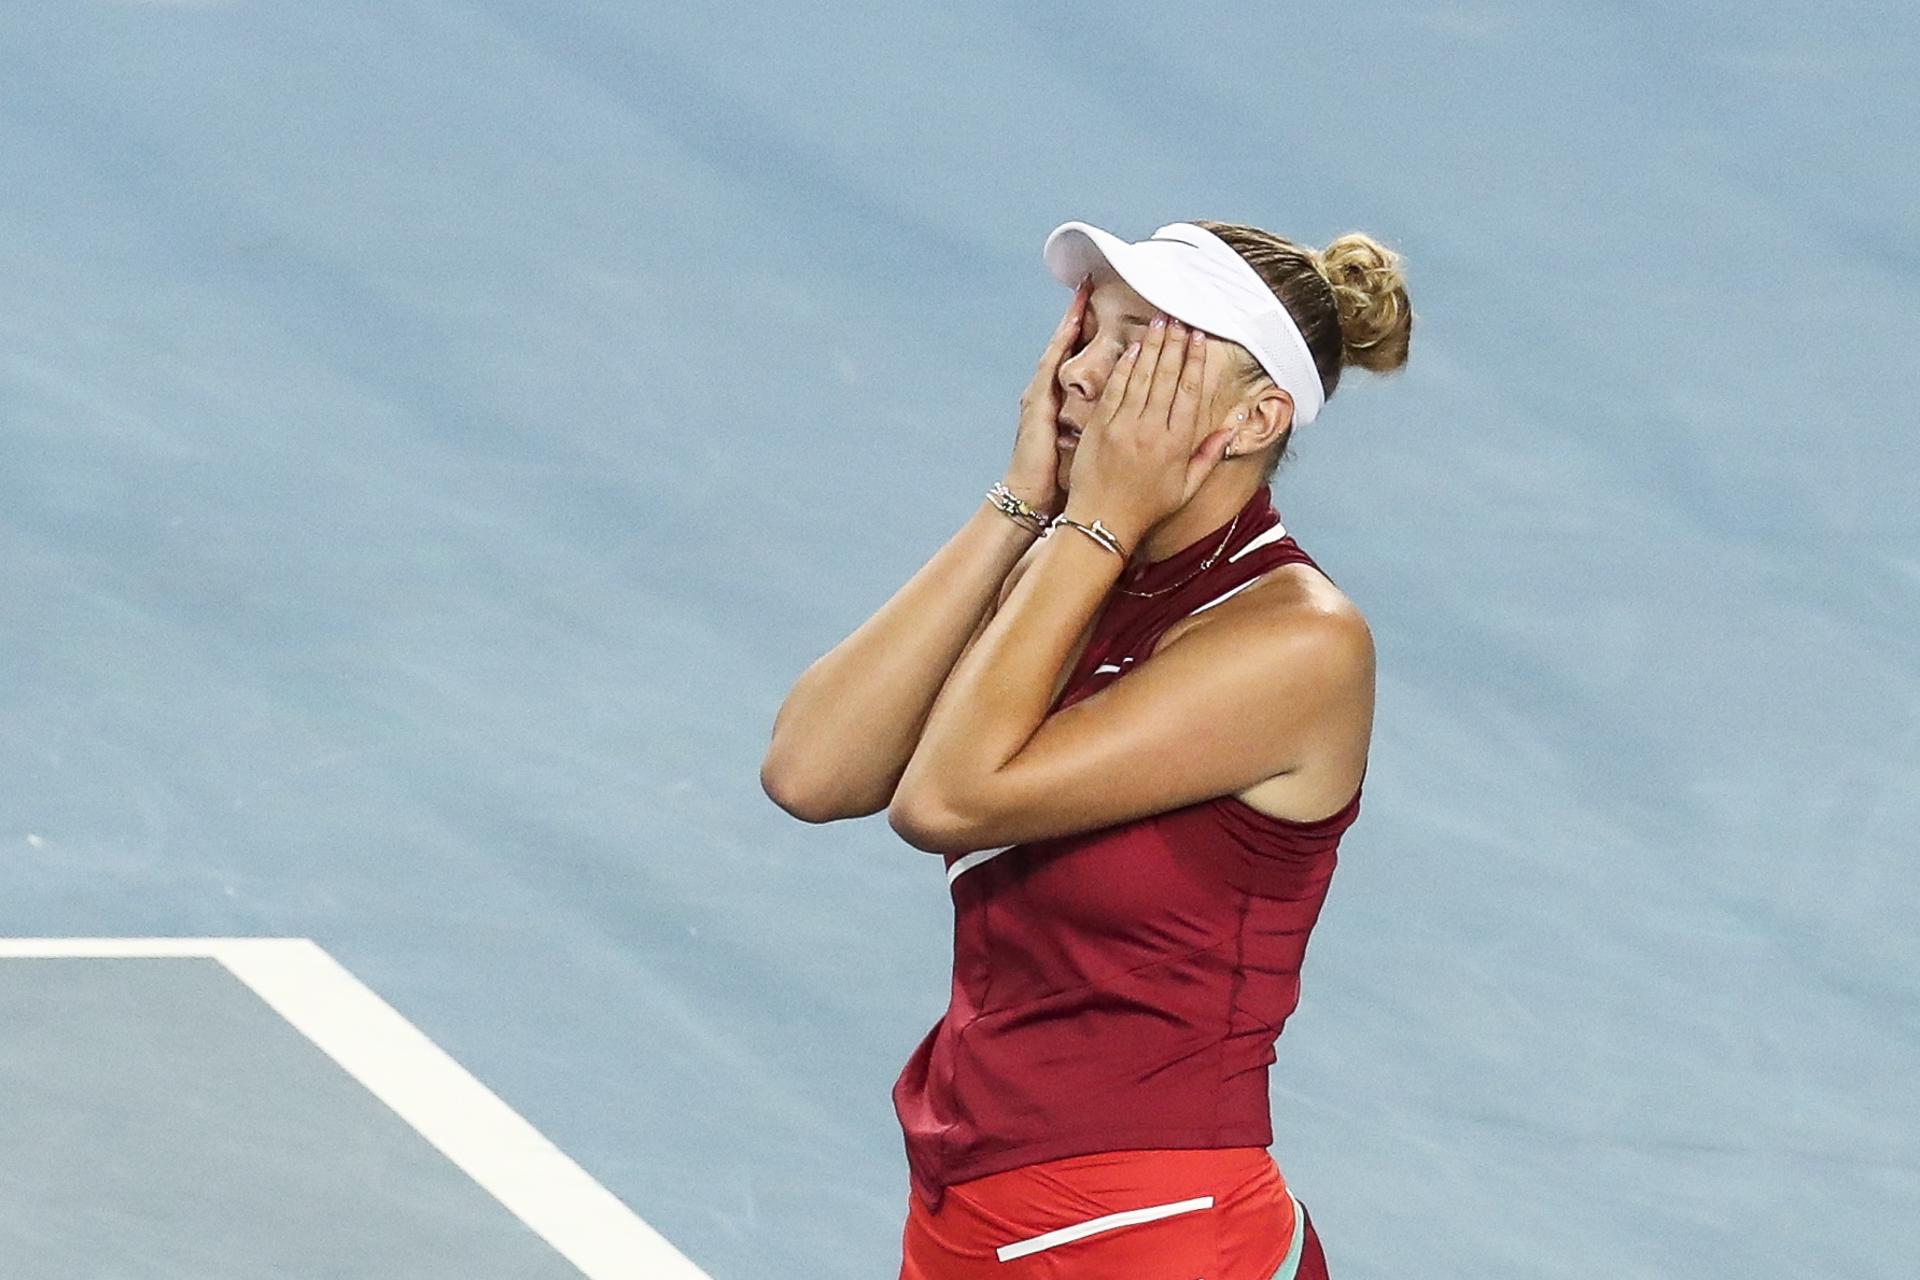 Anisimova, de 21 años, se aparta del tenis porque se le hace "insoportable"